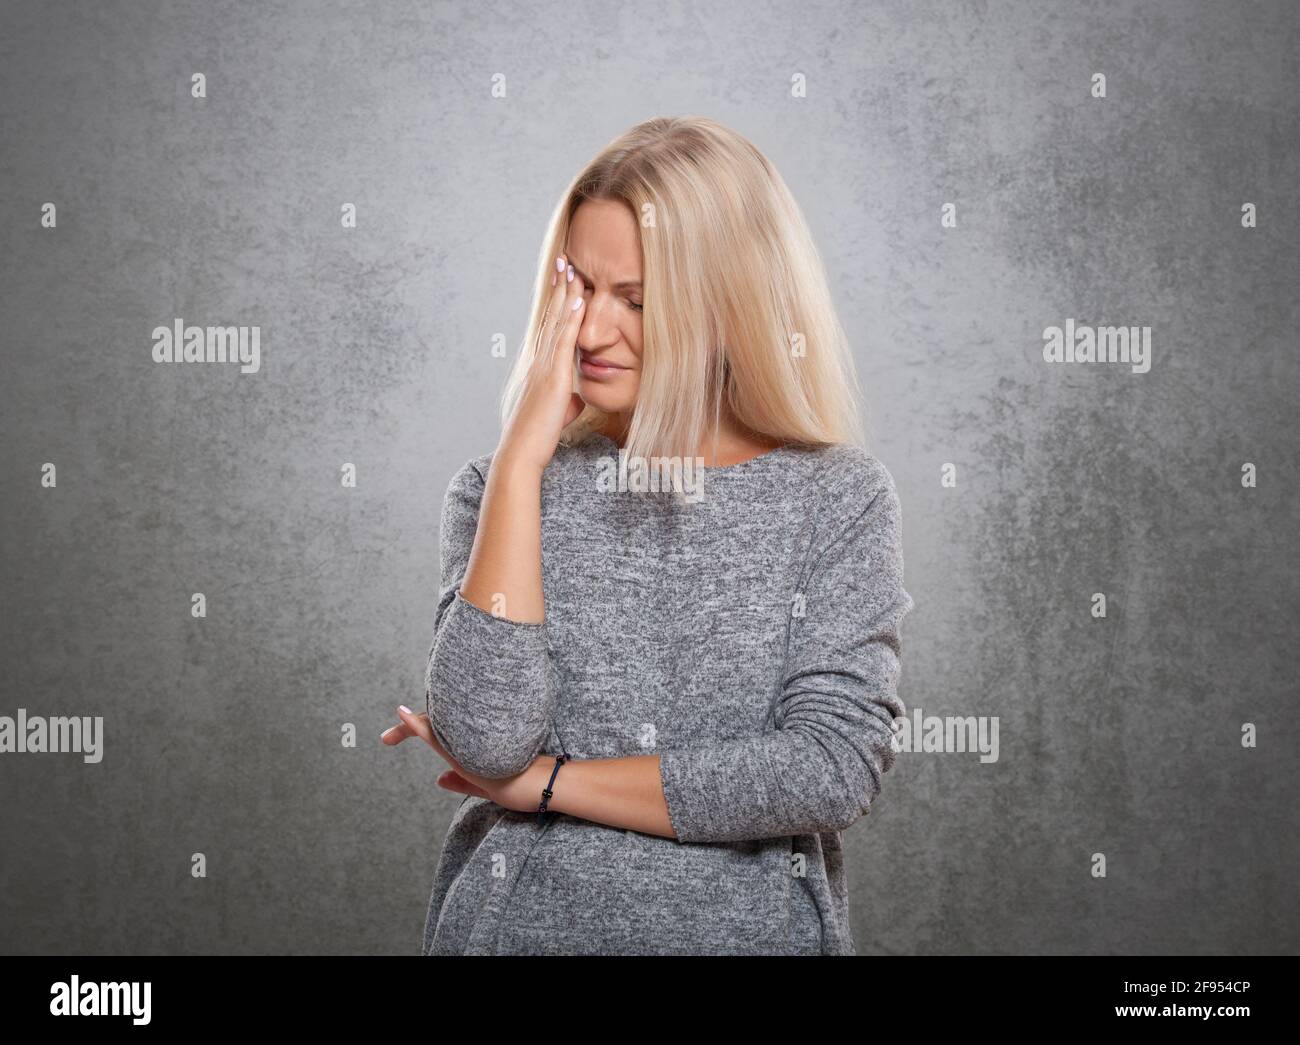 Donne con un volto triste. Su un fondo grigio concreto., donne con un volto triste. Su uno sfondo grigio di cemento. Foto Stock